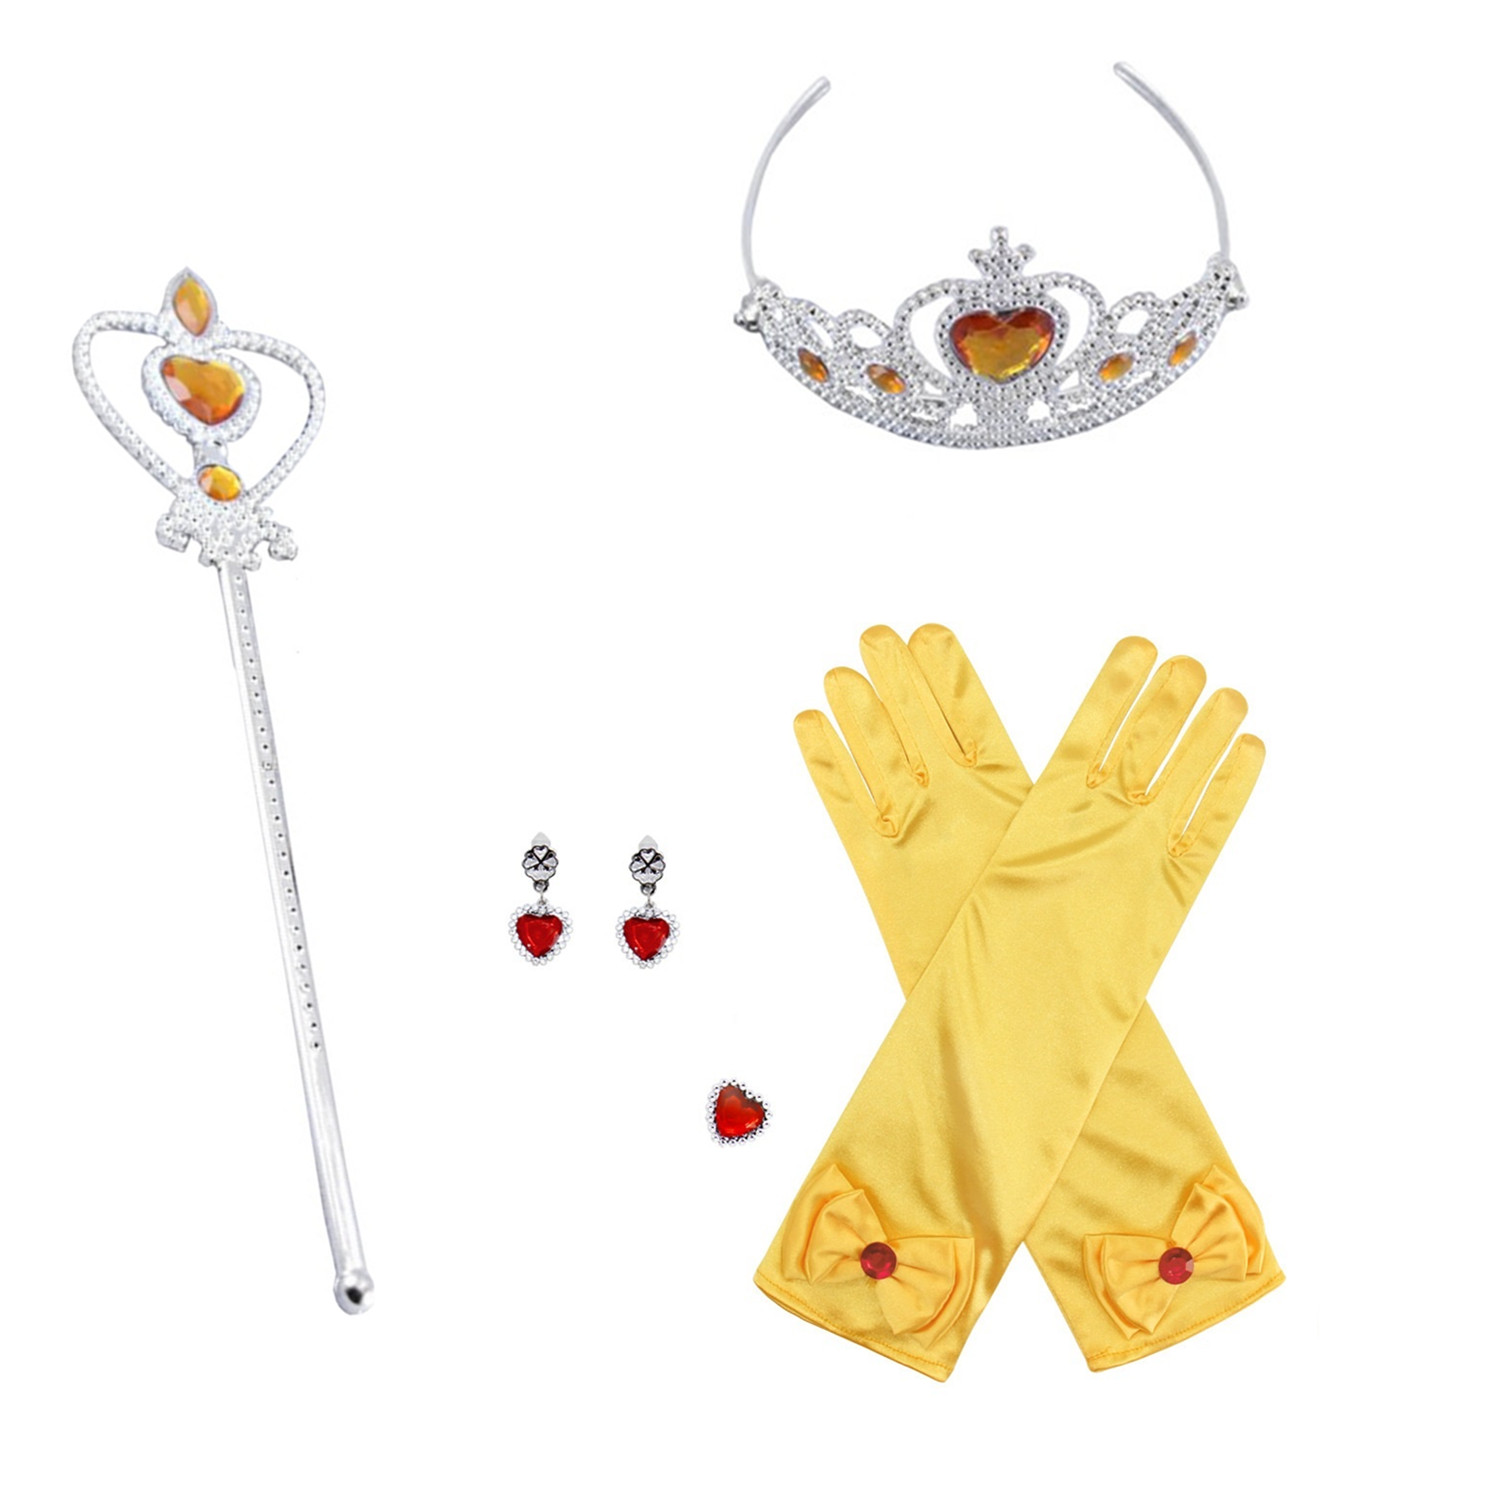  детский аксессуары роскошный 5 позиций комплект украшать подарок перчатки Tiara палка кольцо серьги Halloween Рождество день рождения 